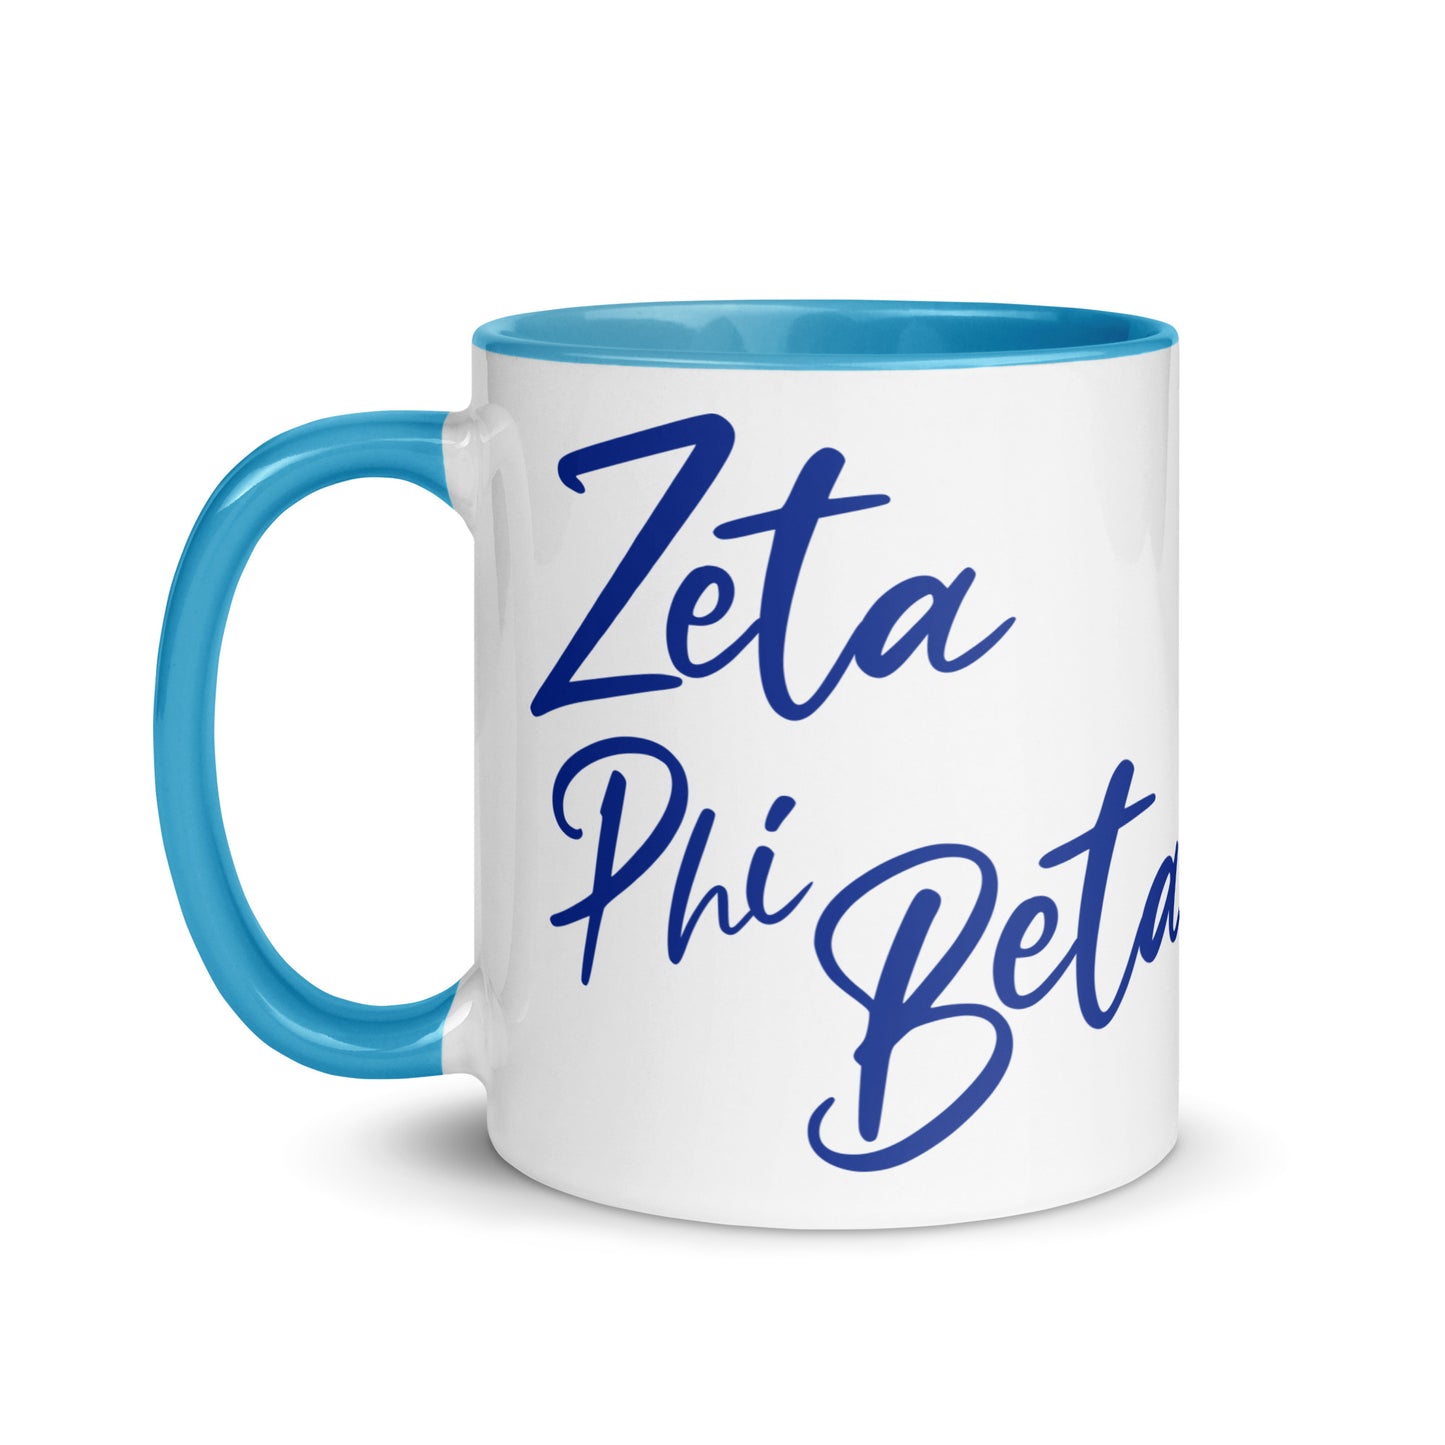 Zeta Script Mug